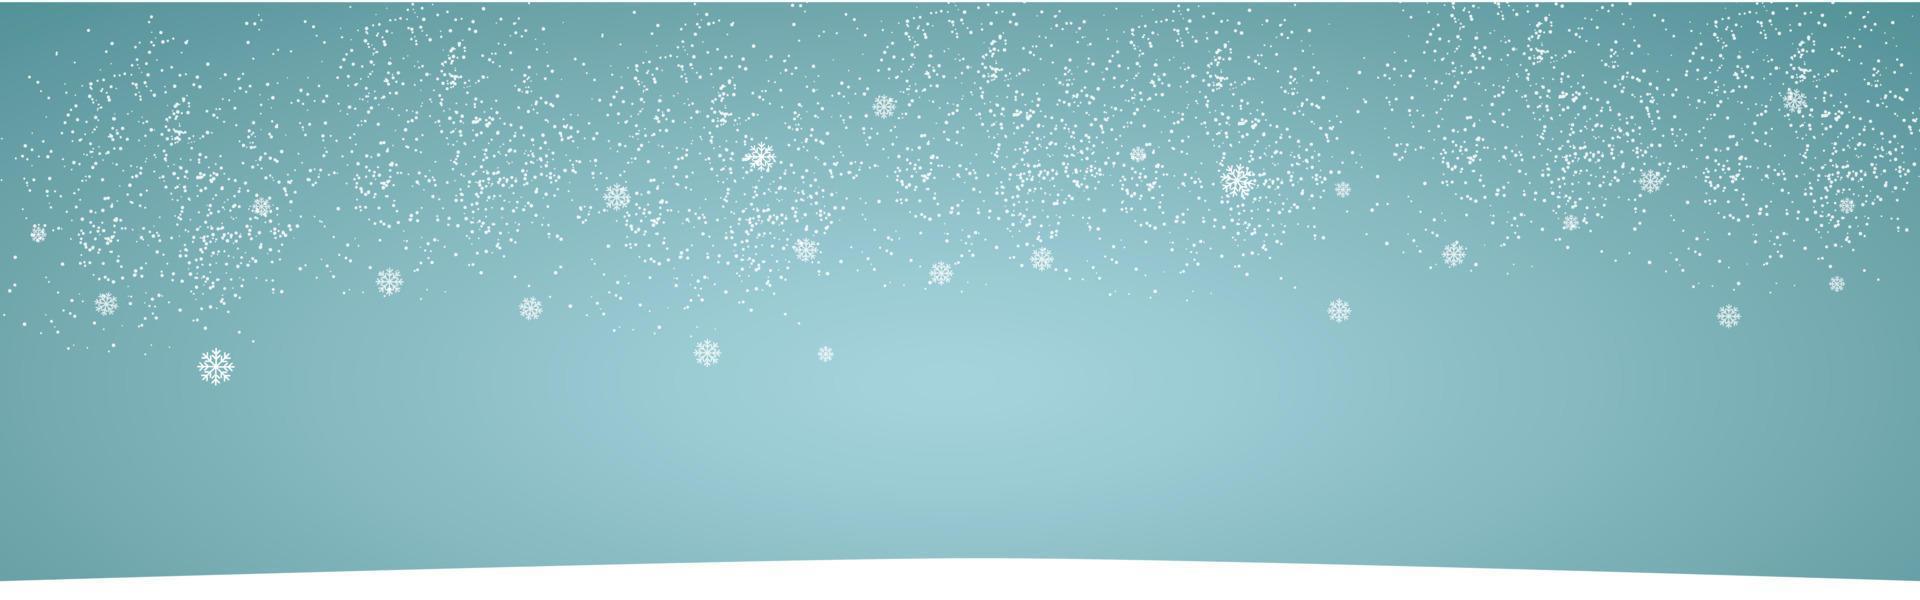 snö realistisk landskap bakgrund med showfall och snöflingor transparent vektor illustration